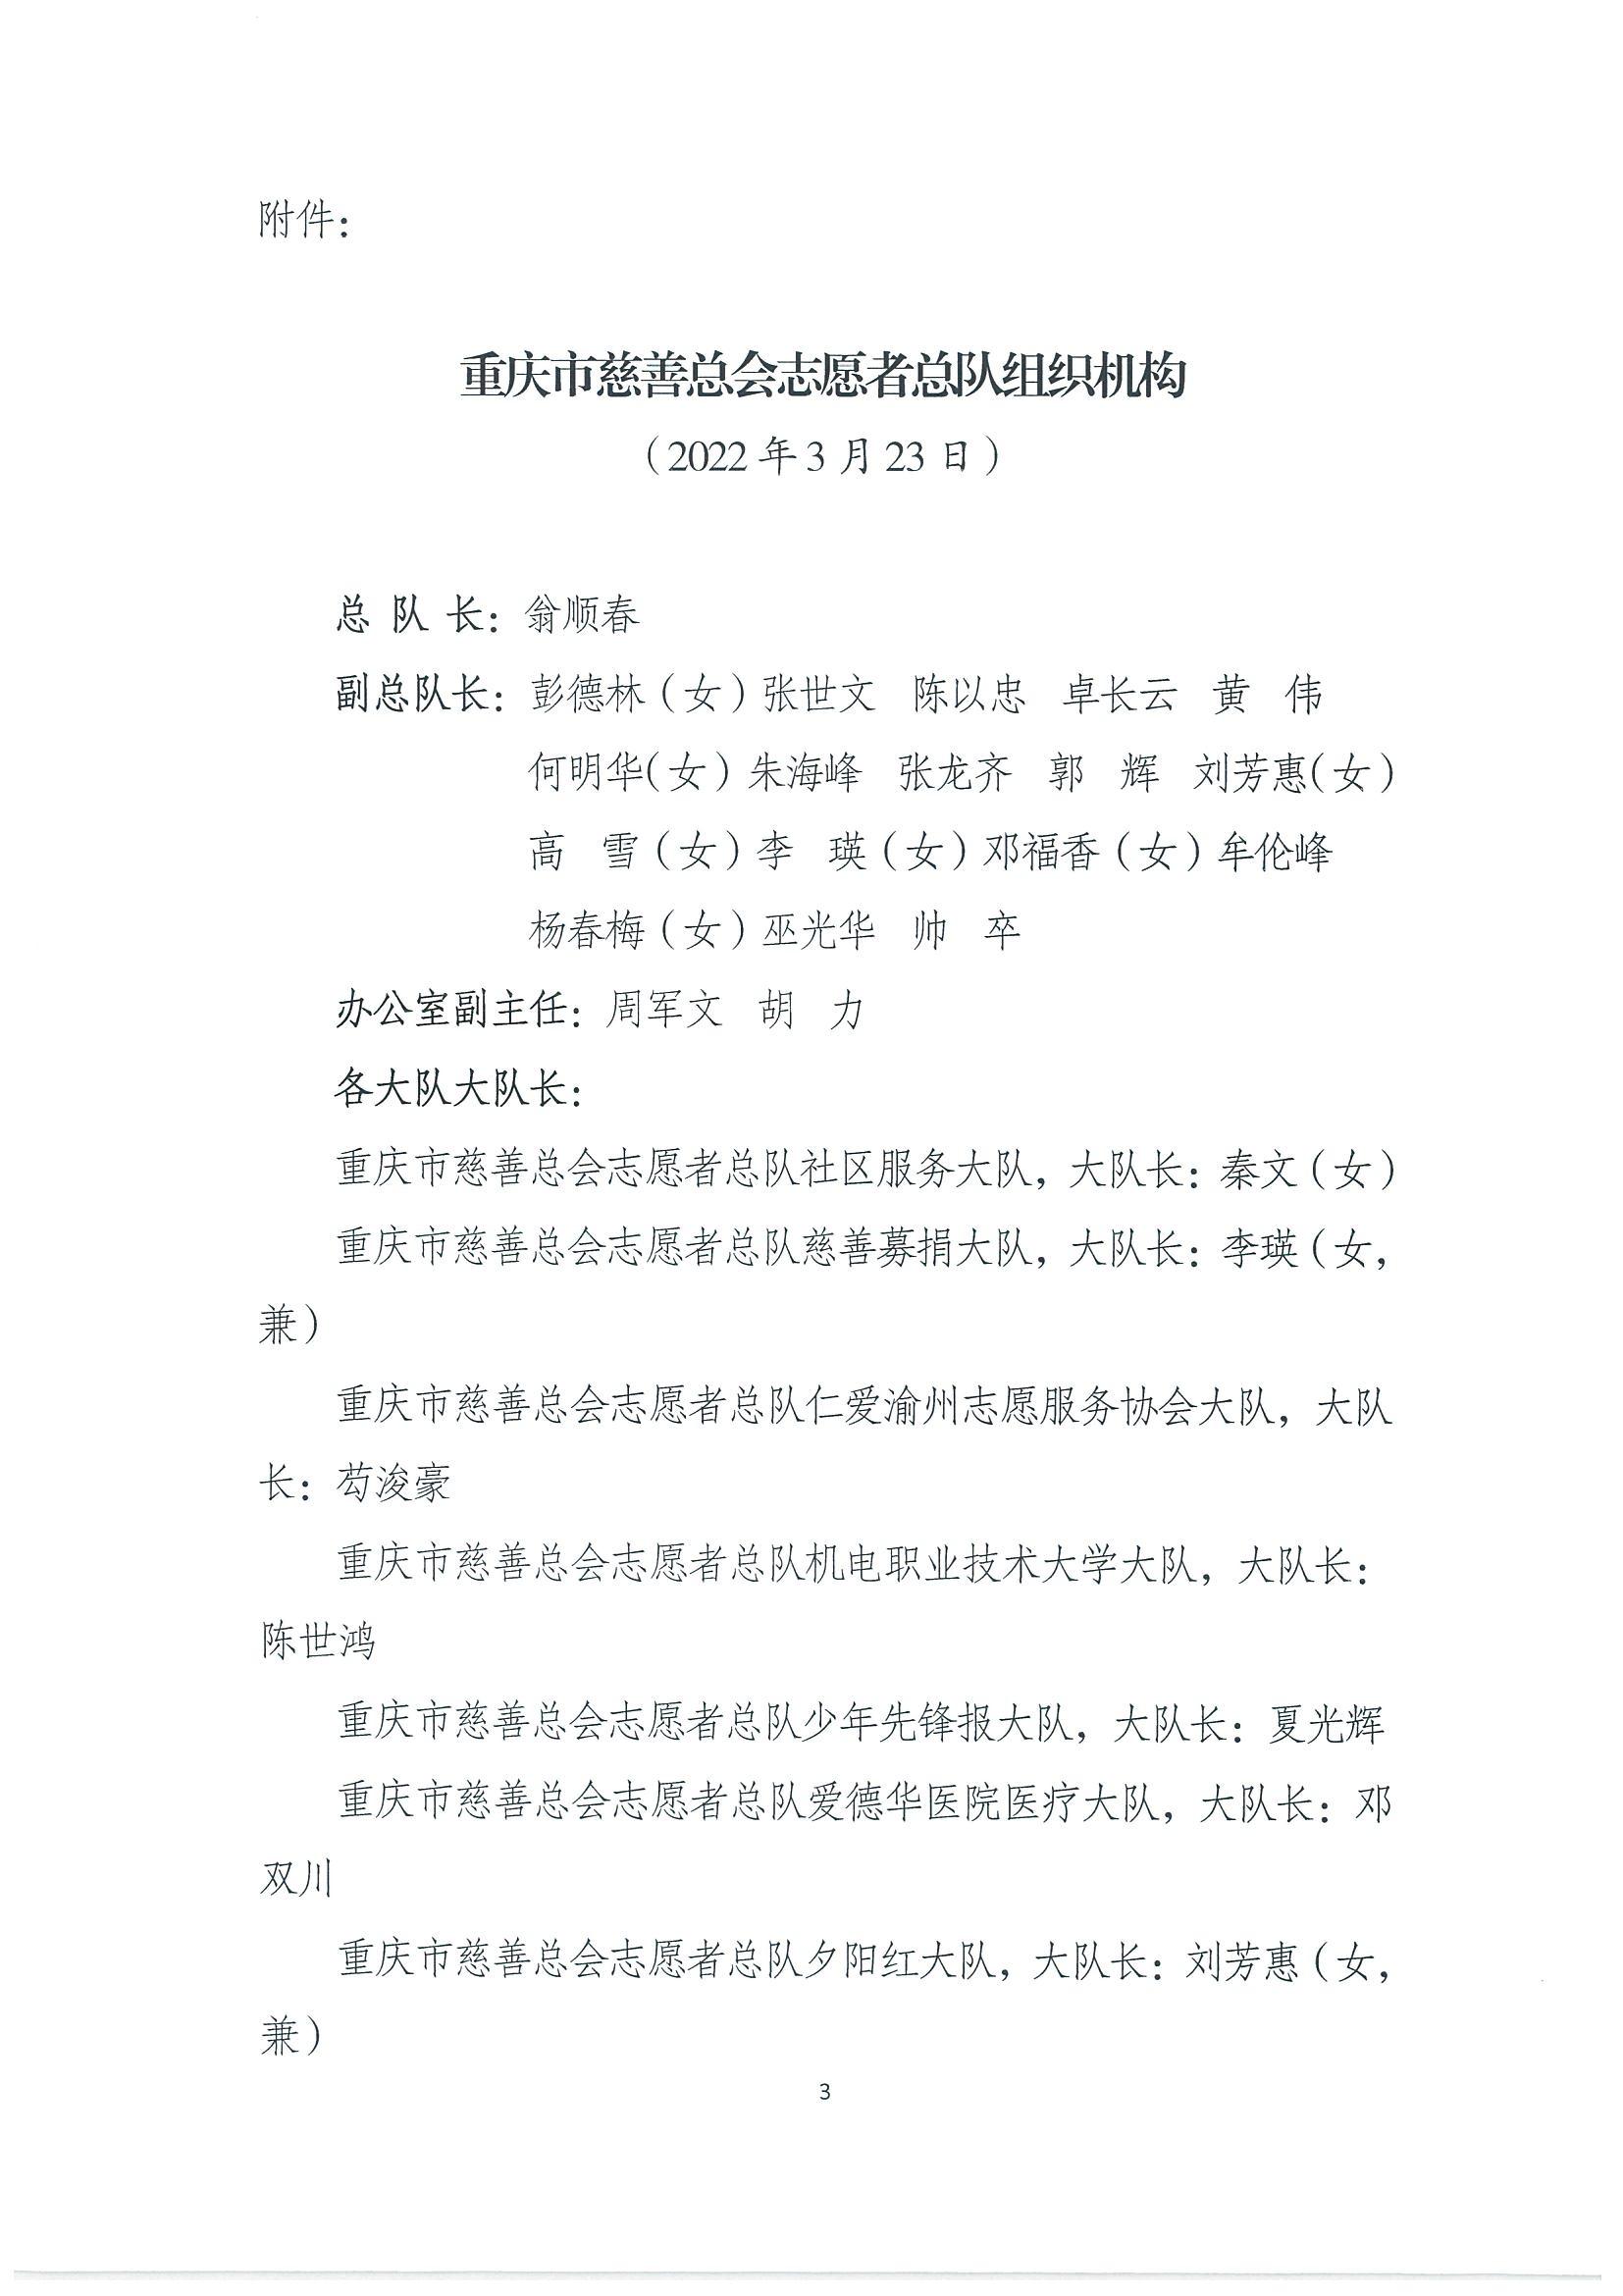 重慶市慈善總會關于公布志愿者總隊組織機構的通知_02.jpg